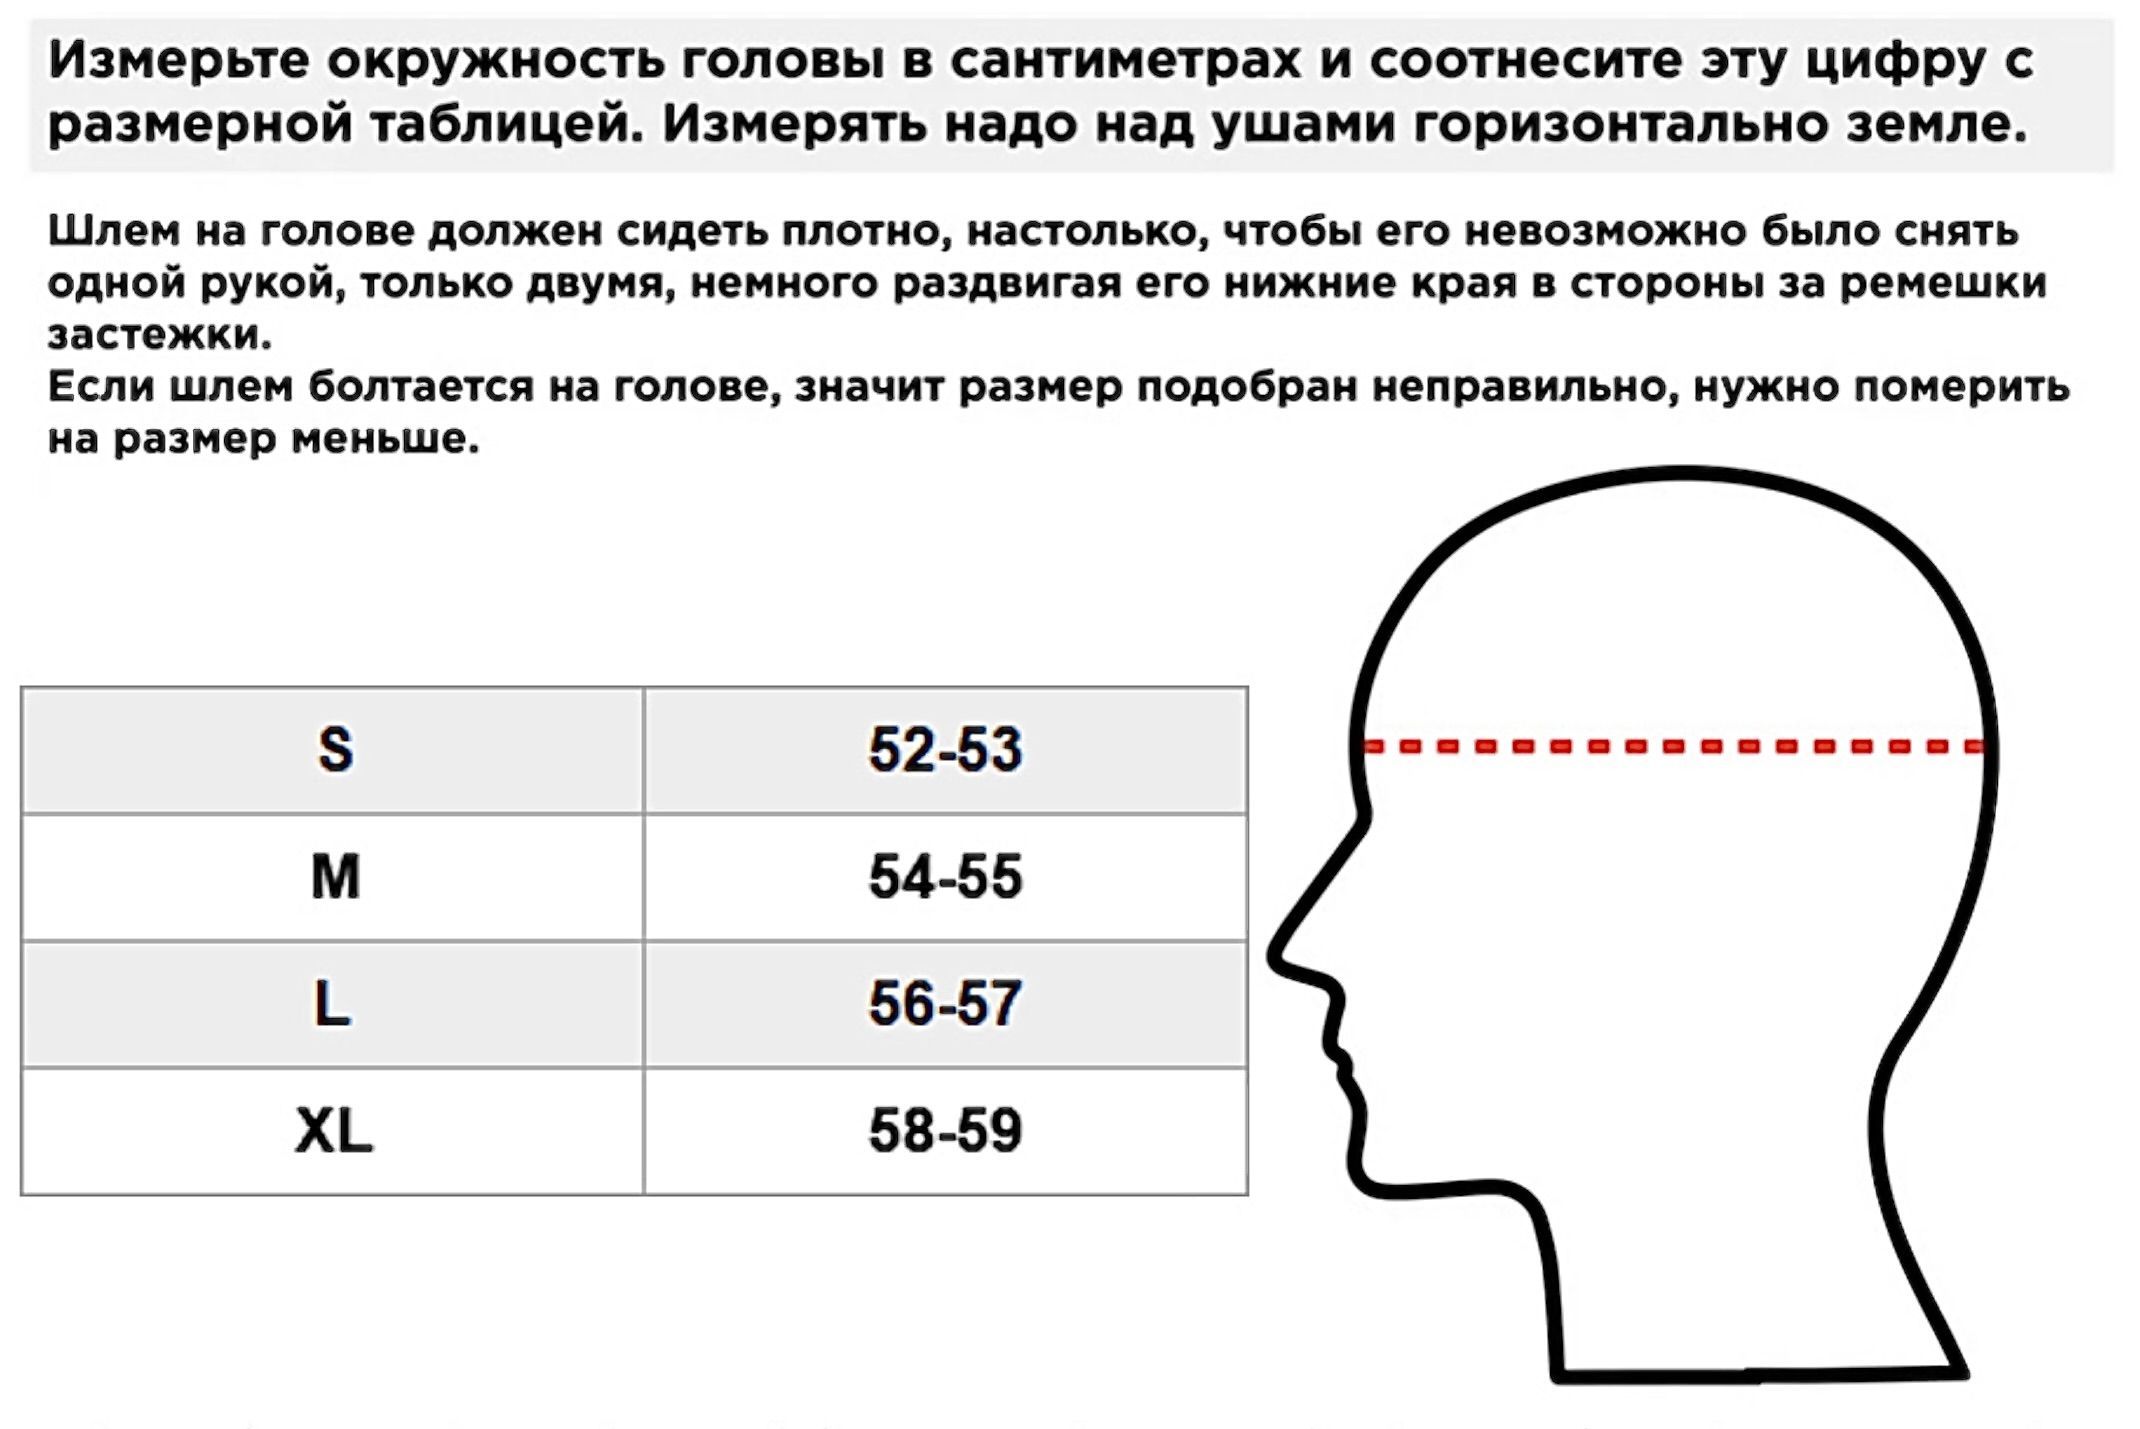 Средняя окружность головы. Размеры шлемов. Измерение головы для шлема. Таблица размеров мотошлемов. Размеры мотошлемов.